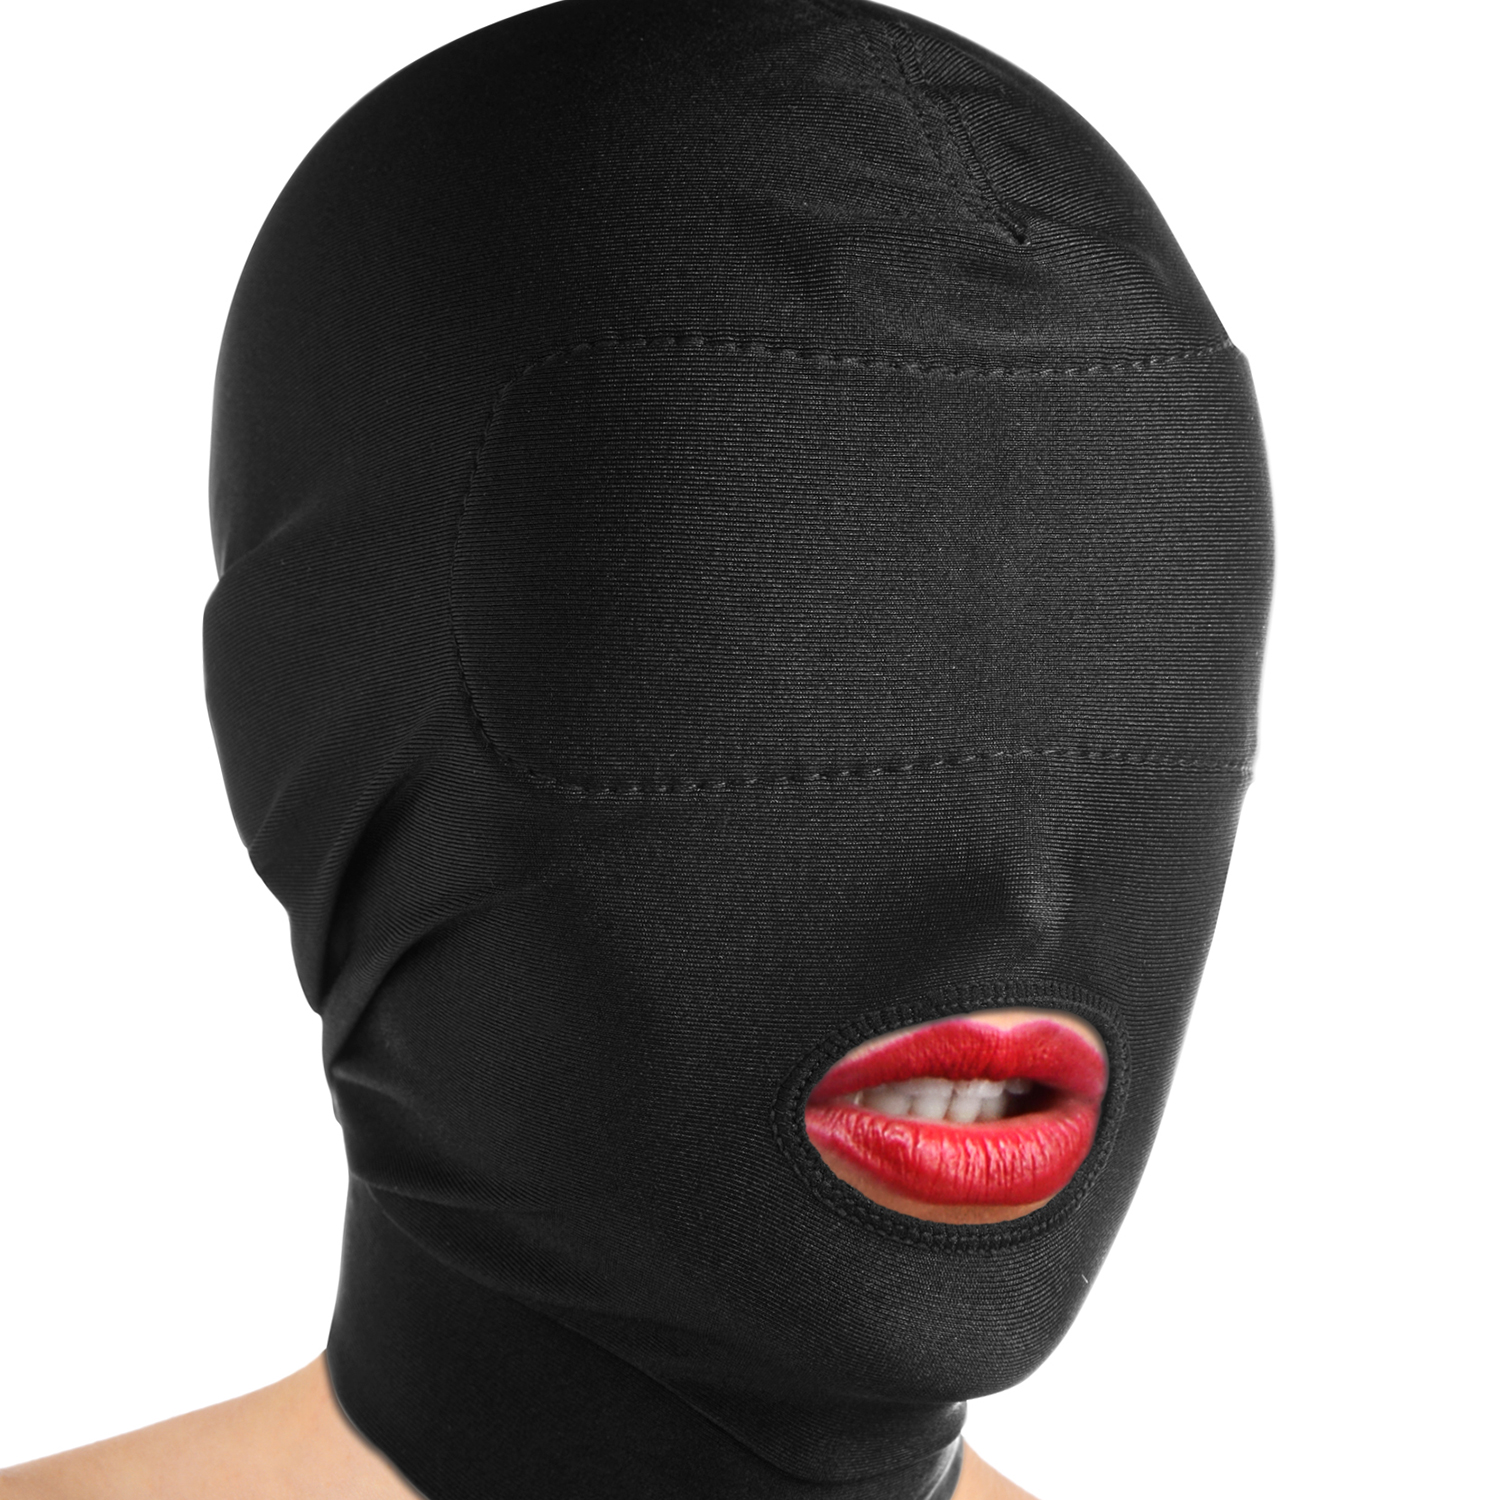 Køb Master Series Disguise Open Mouth Maske med Blindfold